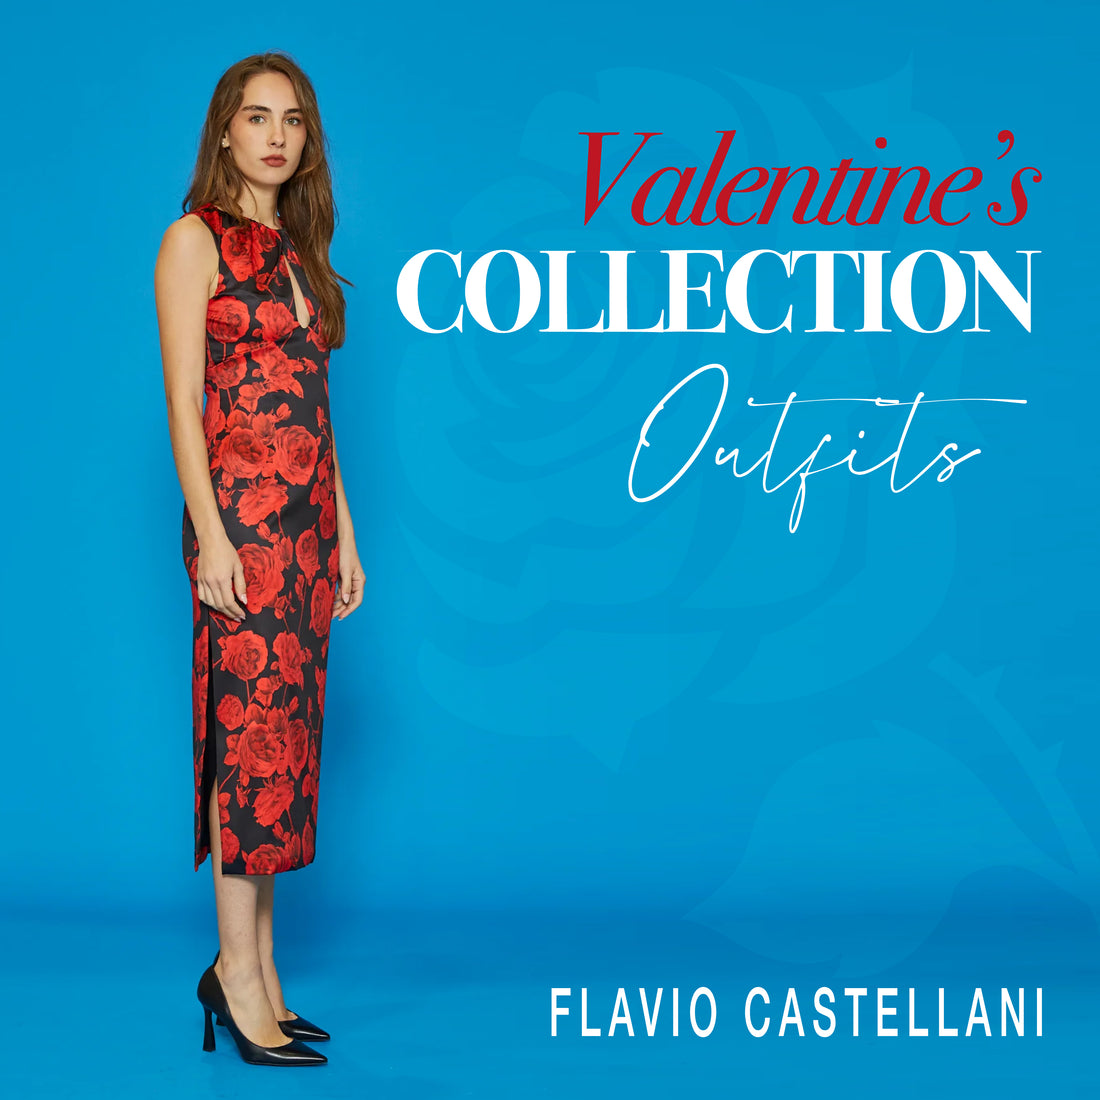 A San Valentino celebra il tuo stile, con l’eleganza firmata Flavio Castellani